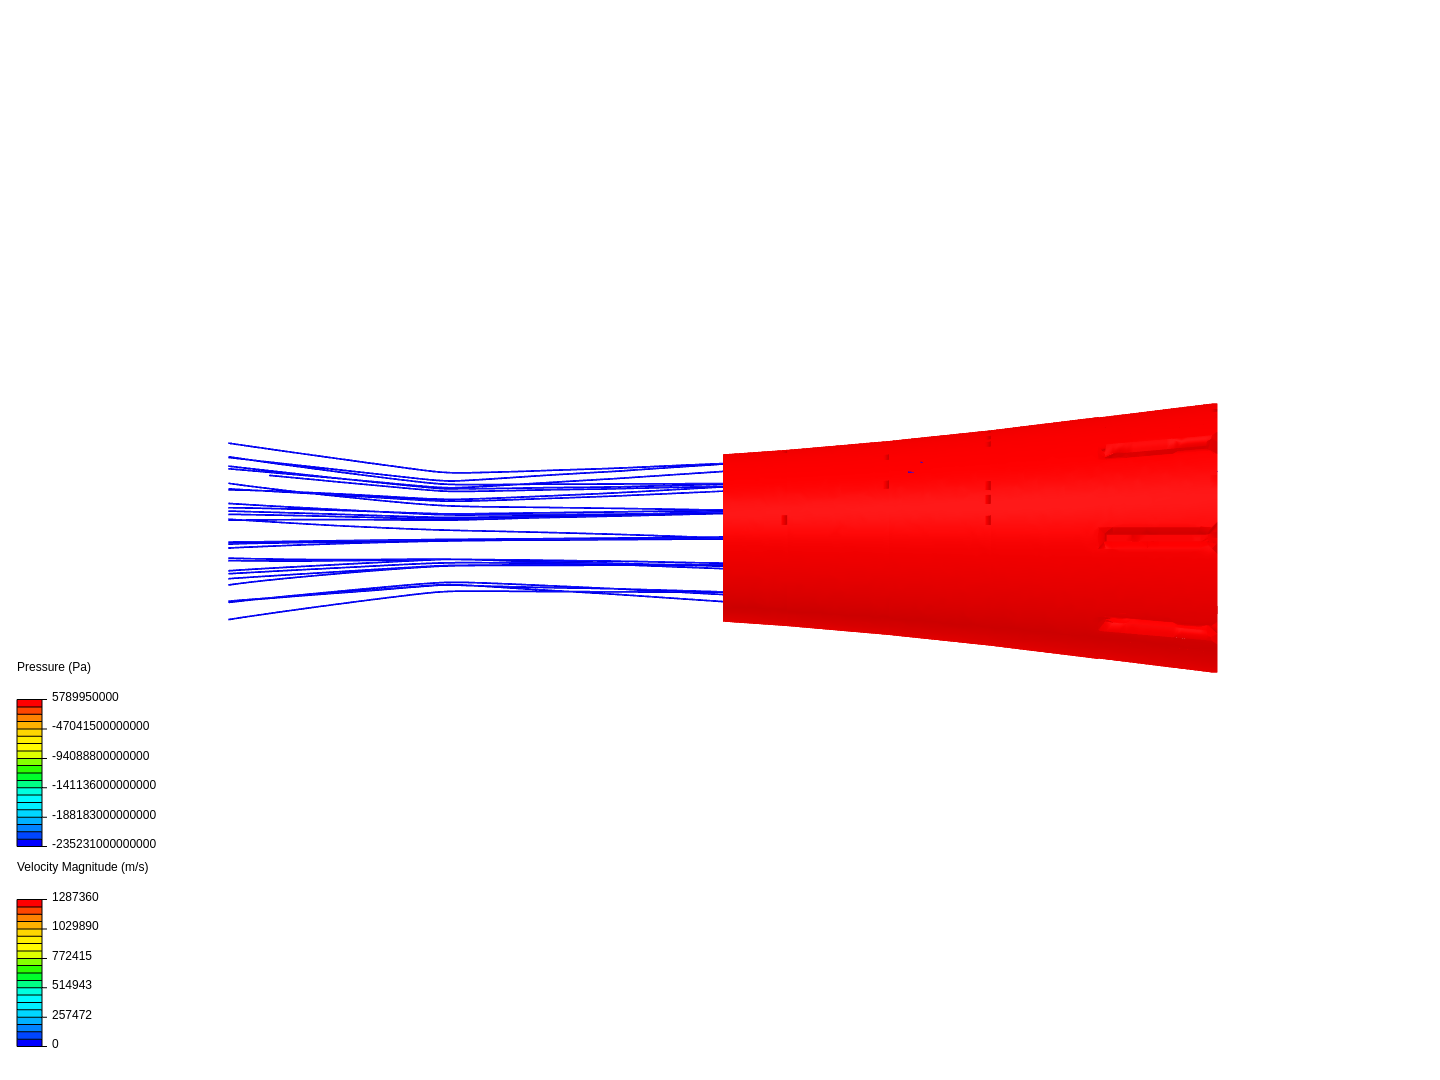 venturi with vortex generators image